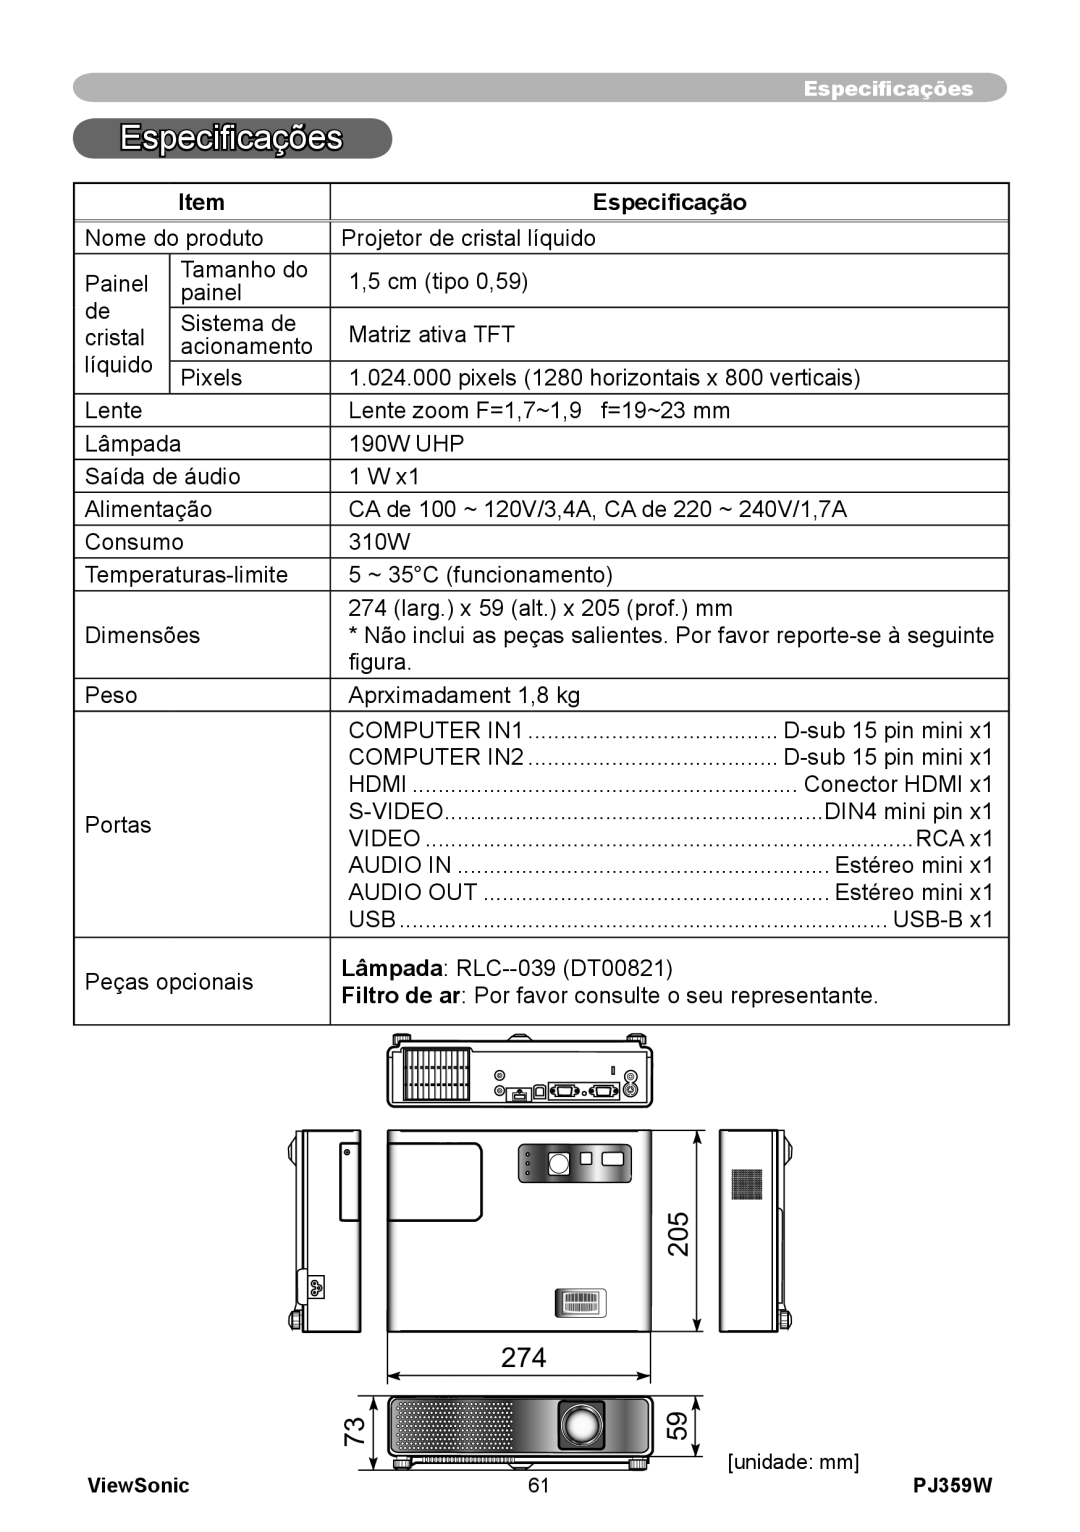 ViewSonic PJ359 manual Especificações, Especificação 